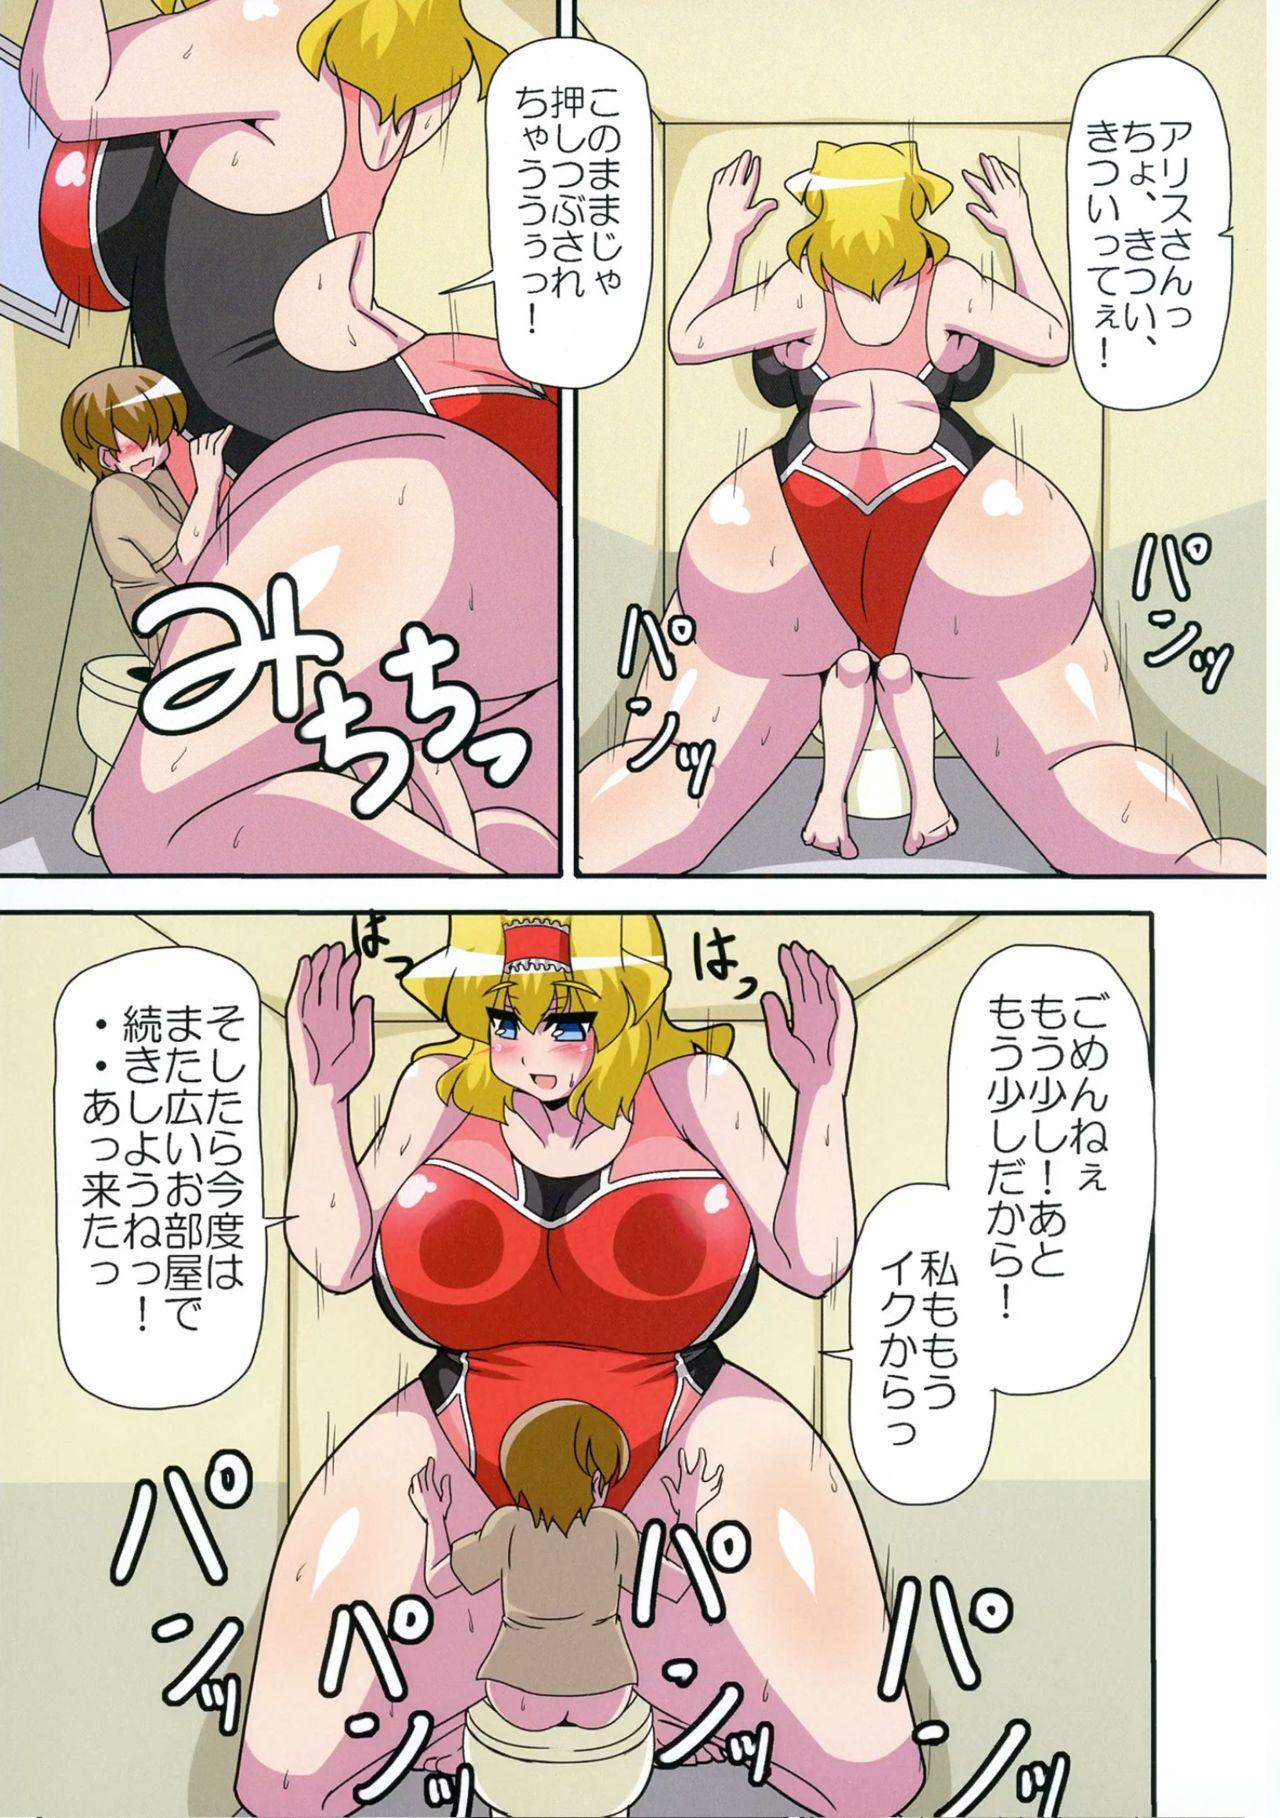 Sex Massage Alice Hitori o Taishou to Suru. Turn Shuuryouji made, Sore wa +3m/+3m no Shuusei o Ukeru. - Touhou project Breasts - Page 24